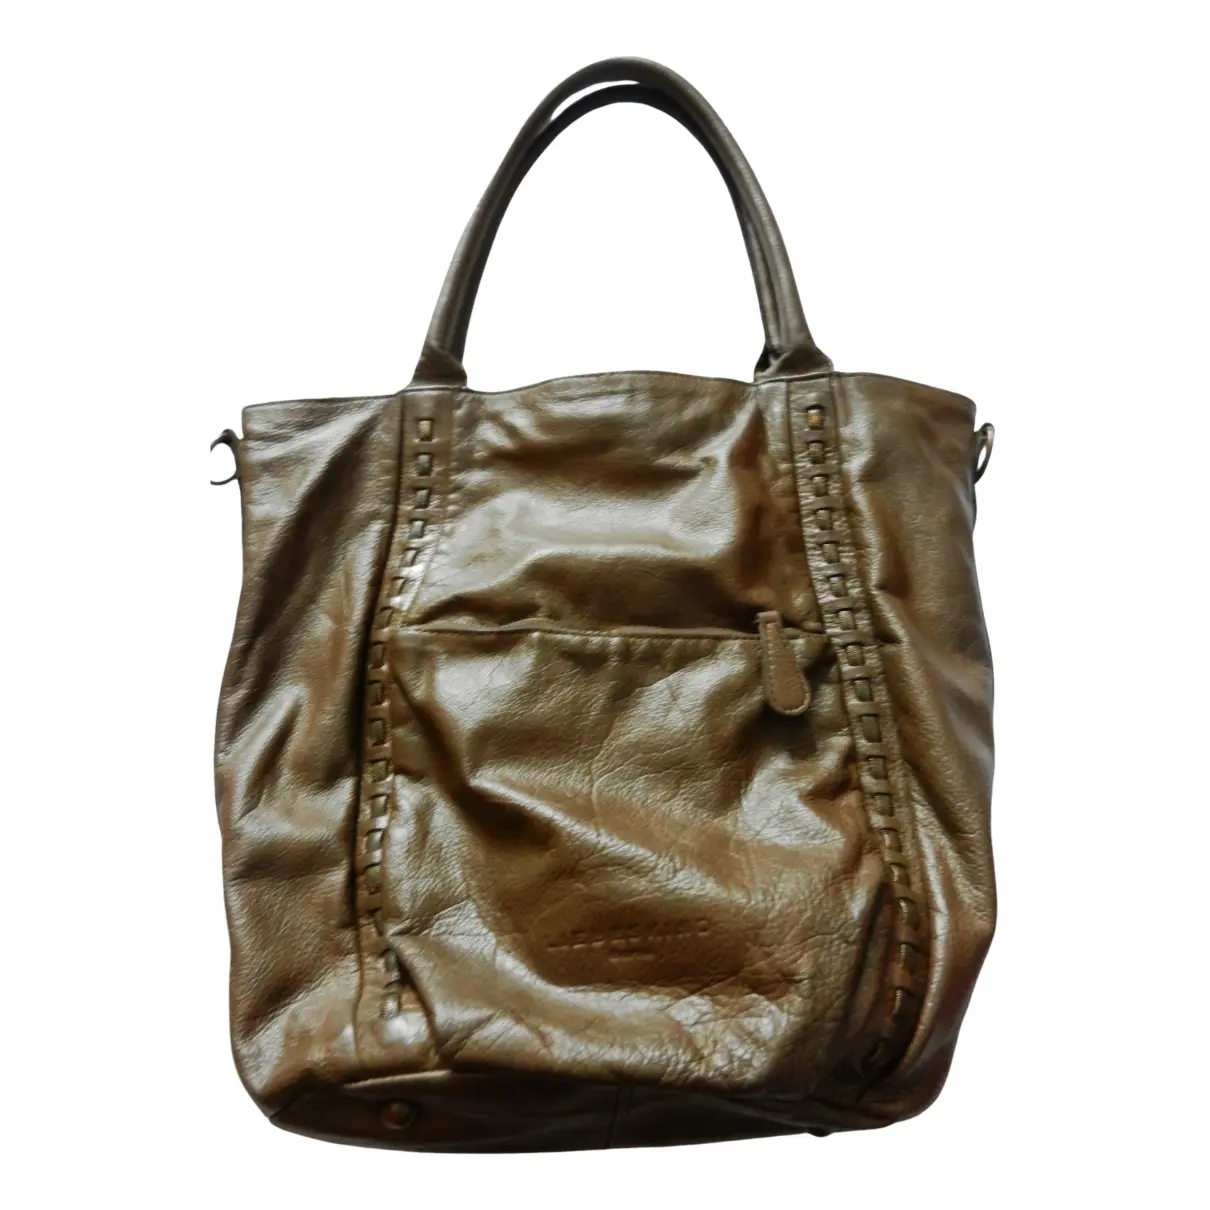 Leather handbag LIEBESKIND